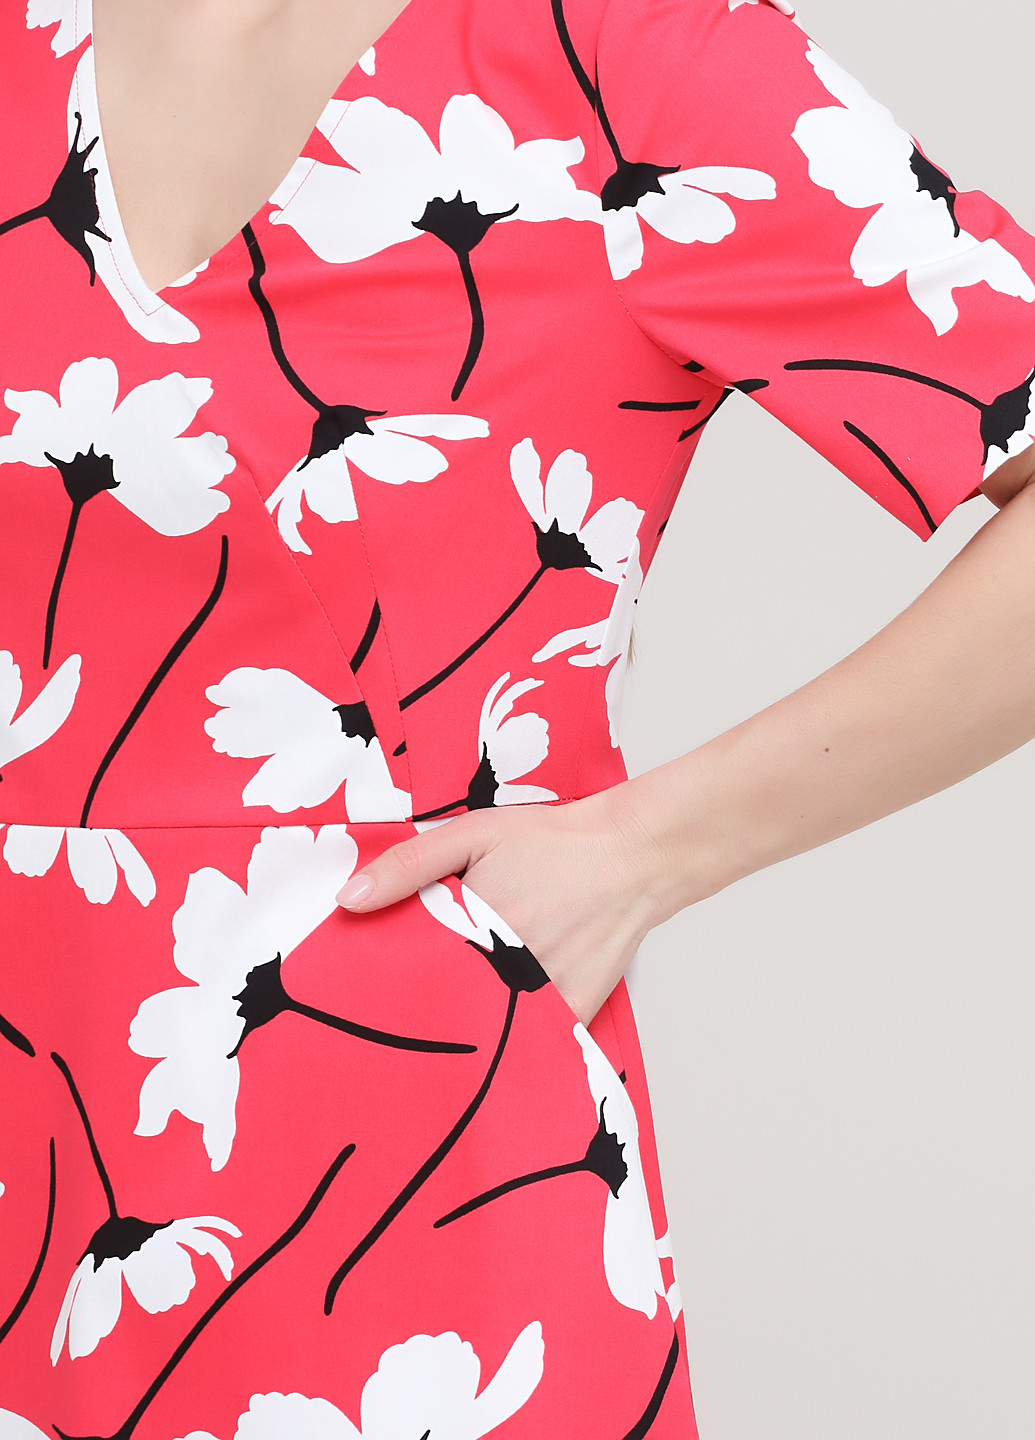 Коралловое деловое платье клеш Olga Shyrai for PUBLIC&PRIVATE с цветочным принтом